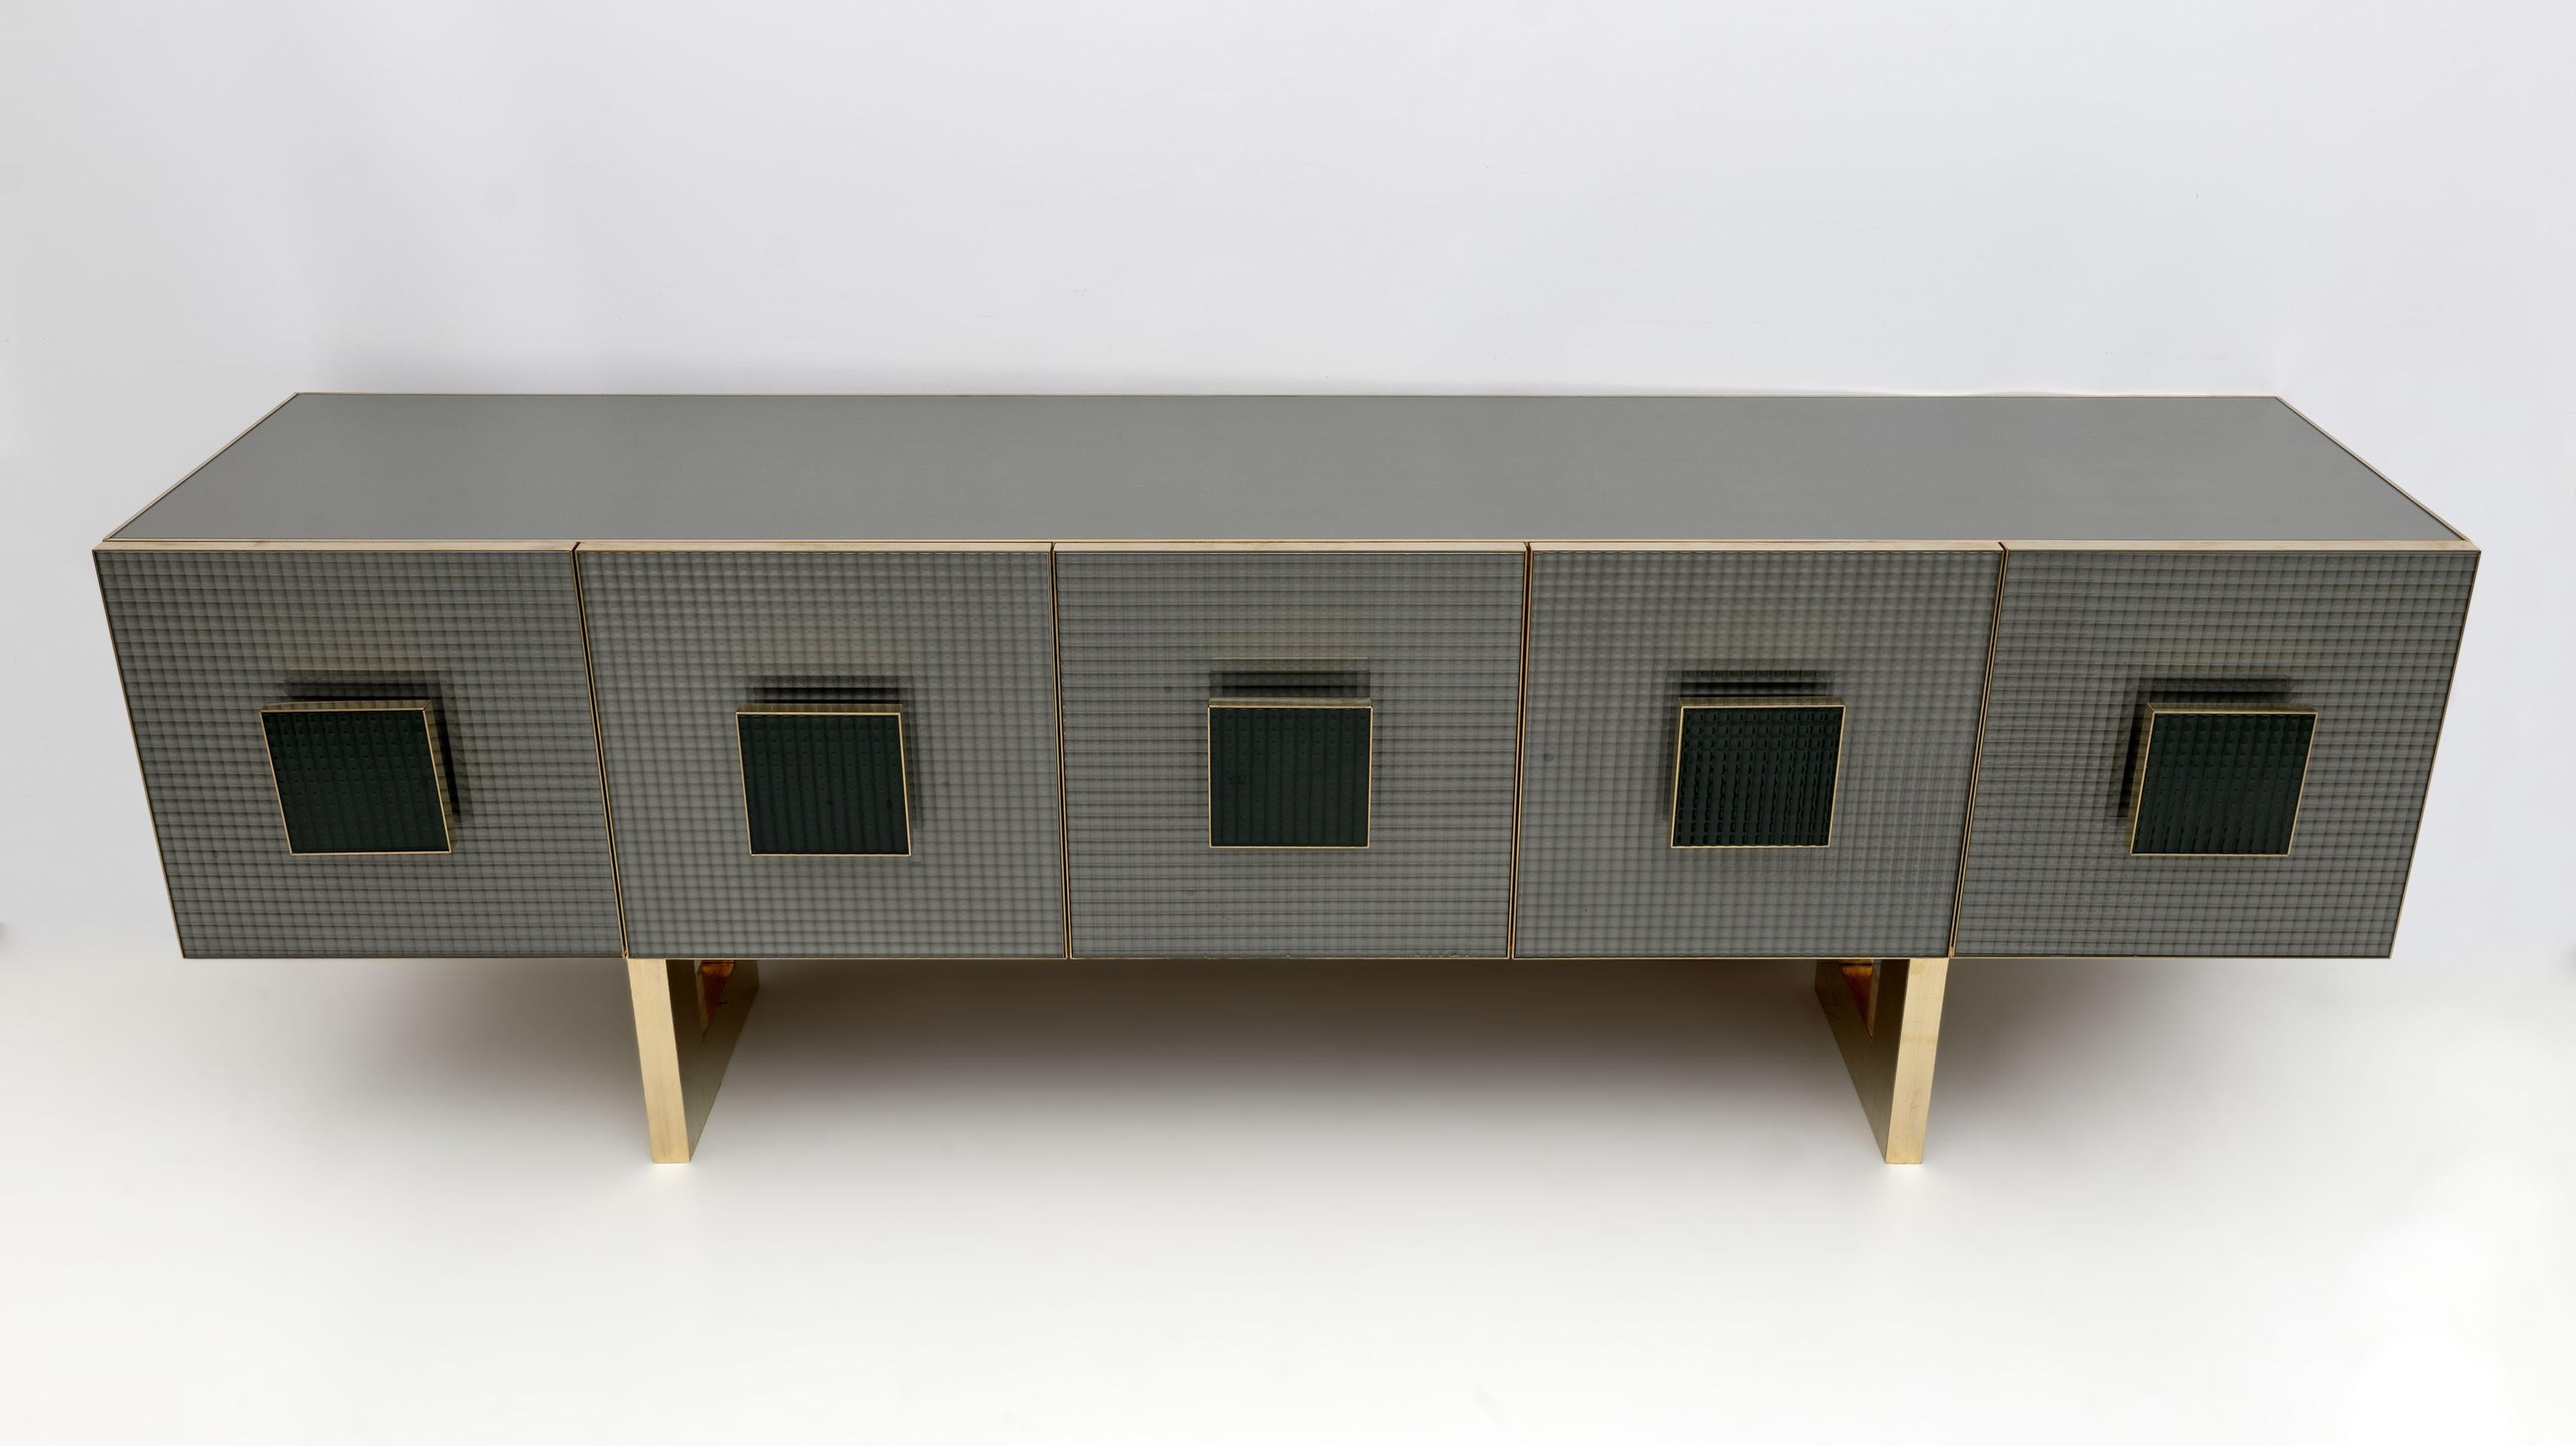 Un intéressant buffet / meuble de bar postmoderne, de conception italienne, avec 5 portes avant en verre imprimé gris et des poignées carrées en laiton et en verre imprimé vert foncé, mettant en valeur les finitions en laiton. Le reste du meuble, le